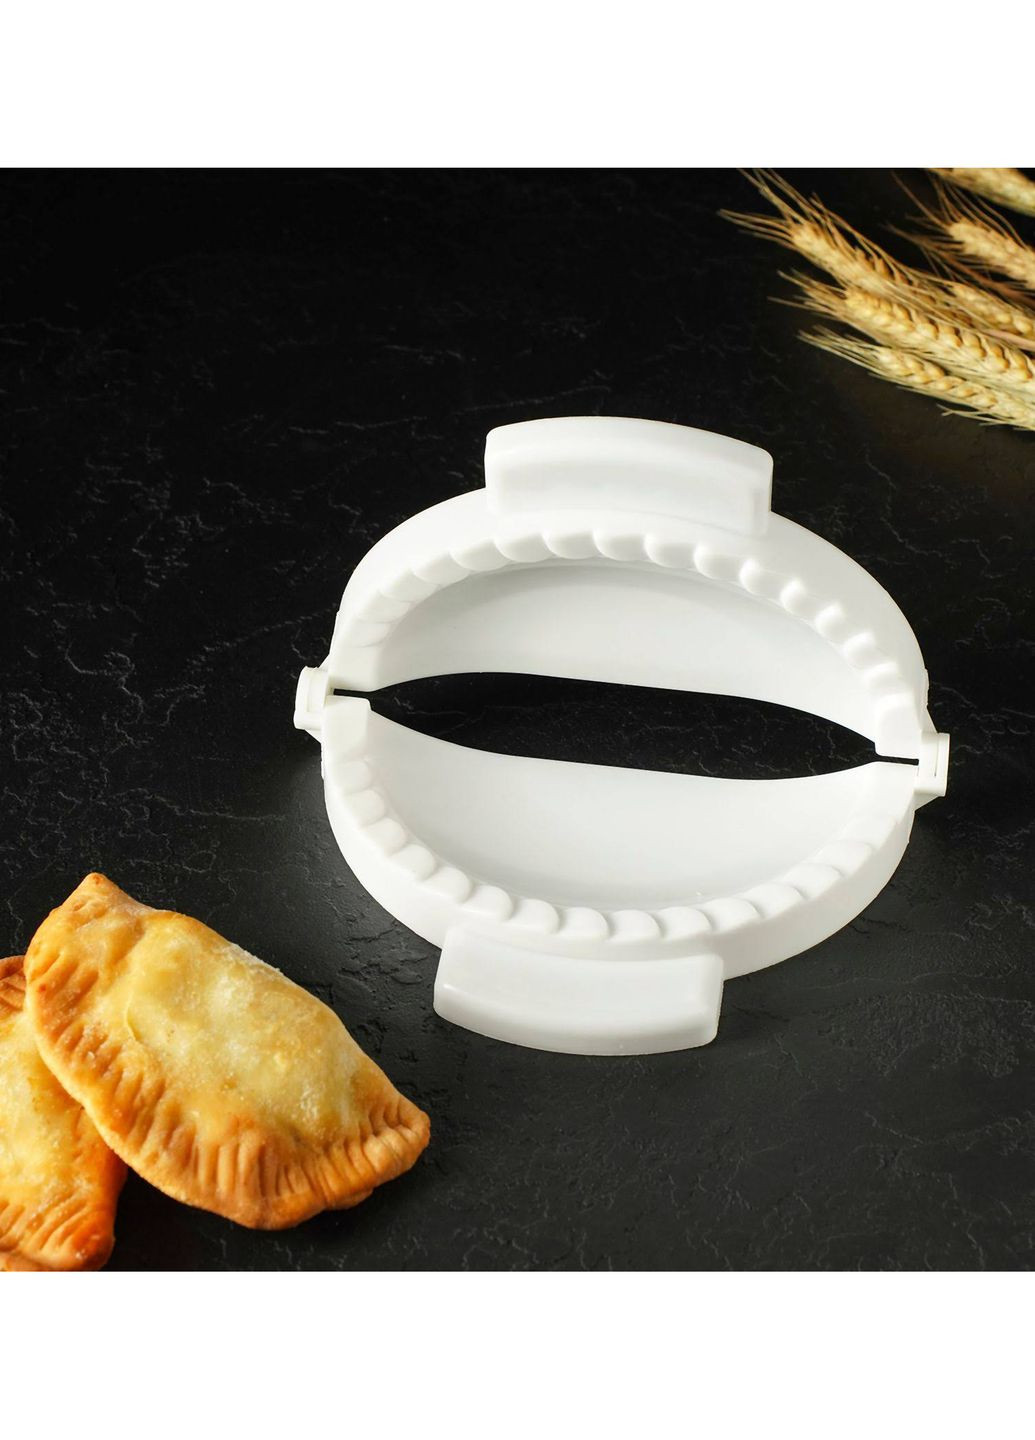 Пластиковая форма для лепки чебуреков и пирожков (чебуречница) диаметр 18 см LY (260165286)